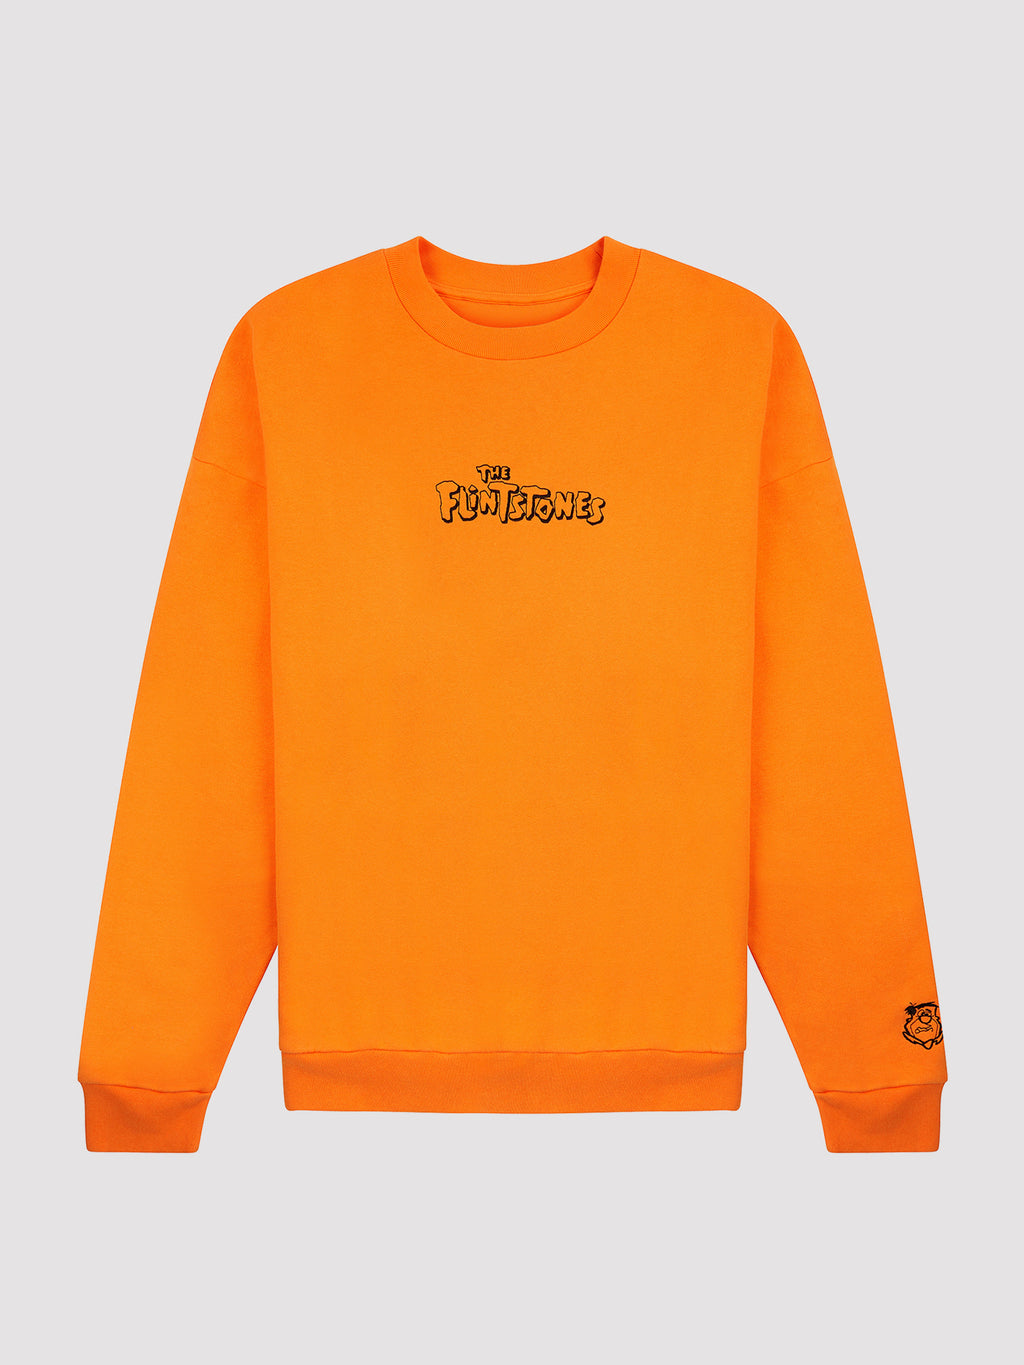 Lazy Oaf x The Flintstones Orange Fred Sweatshirt